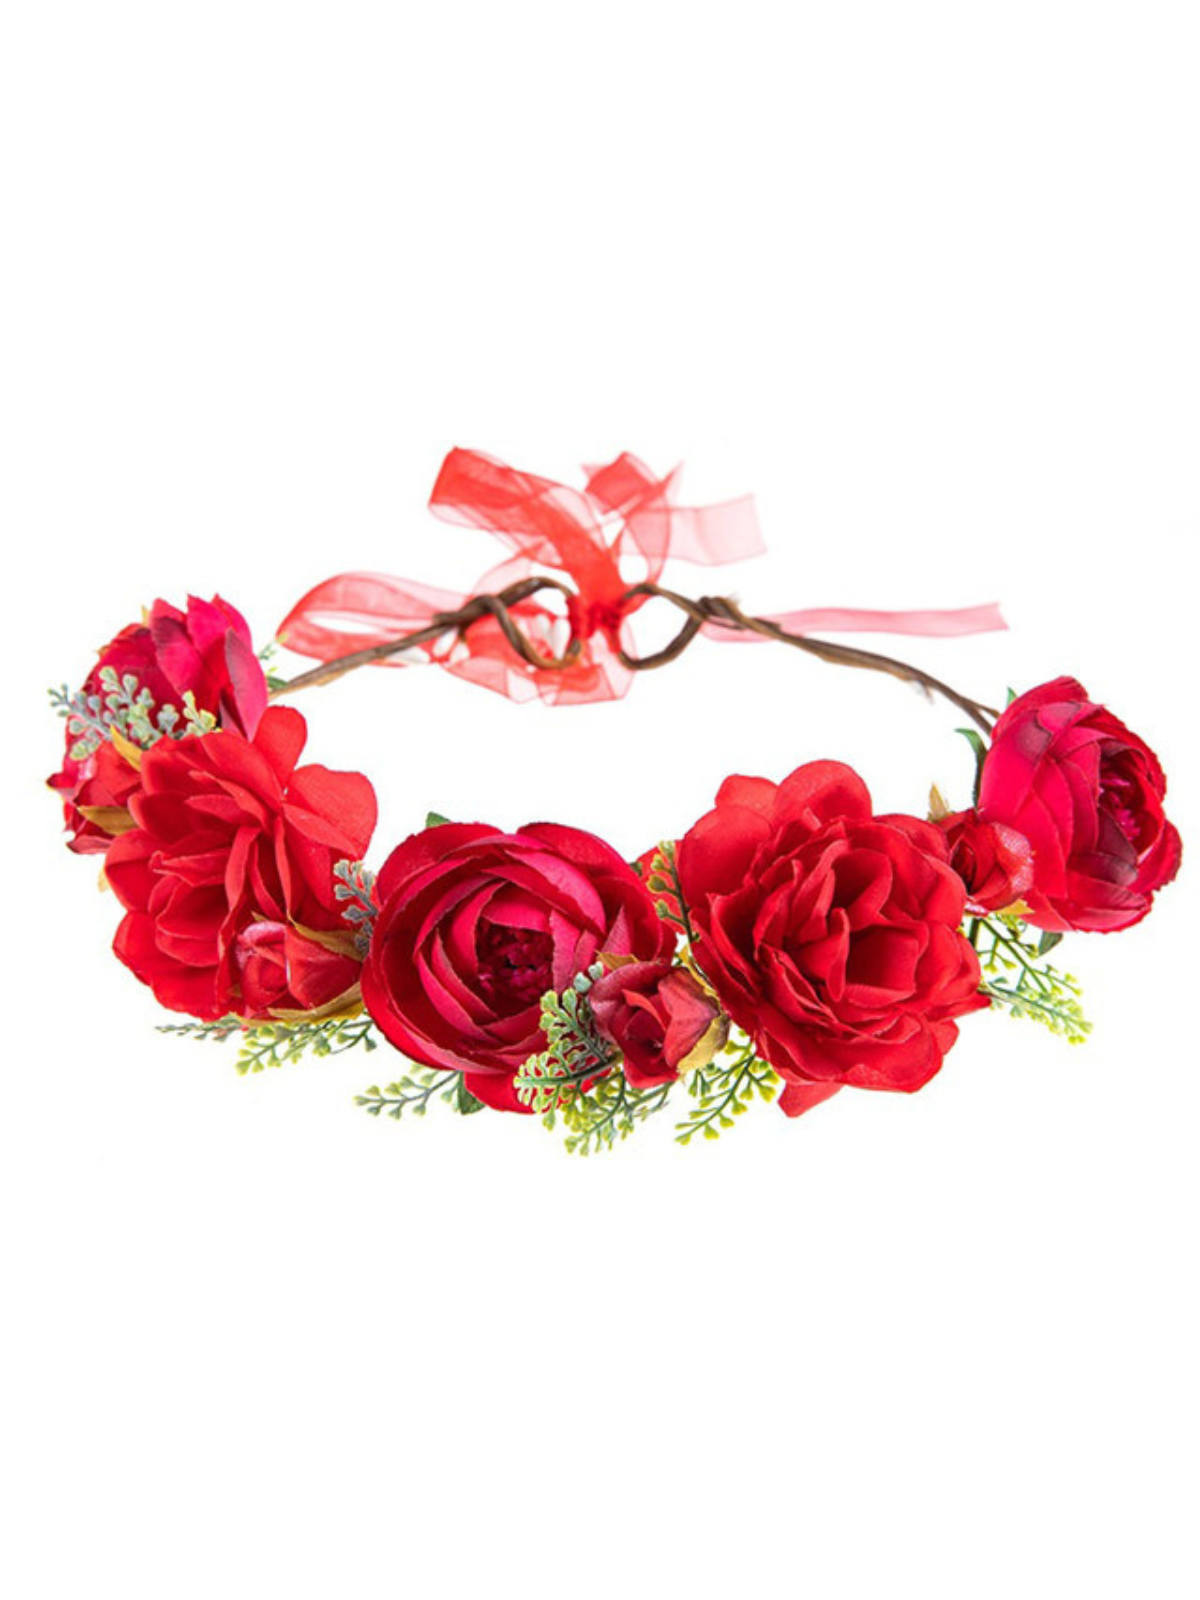 Heartfelt Blooms Red Rose Headband